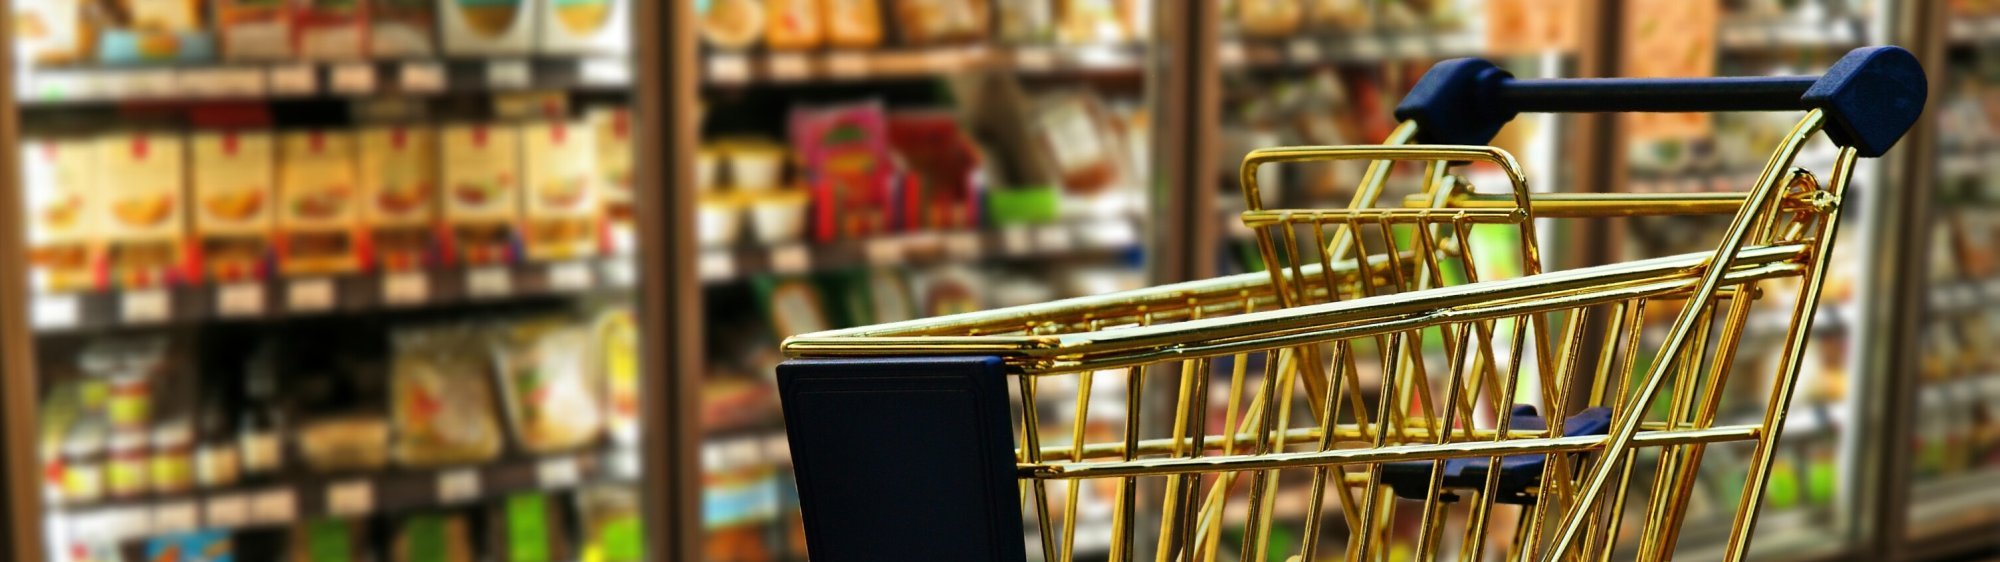 Supermercado Raices Reparto De Vino Y Hielo